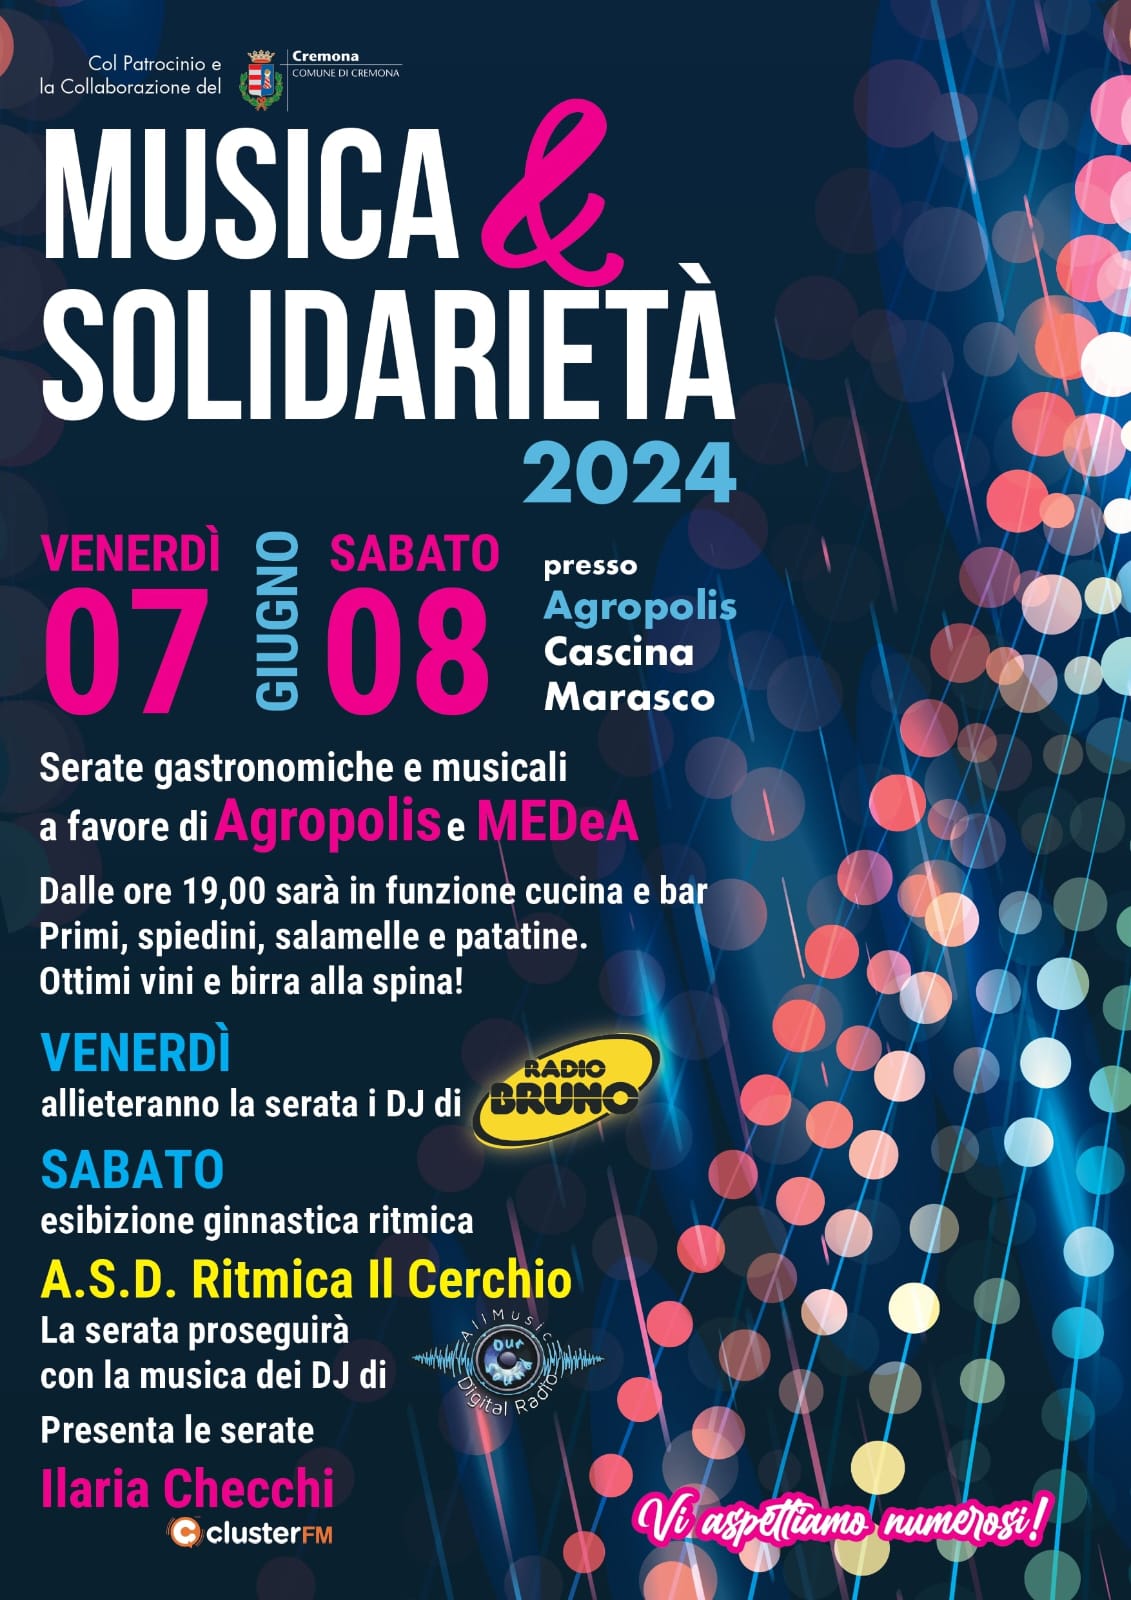 Musica&Solidarietà: a Cremona il 7 e 8 giugno